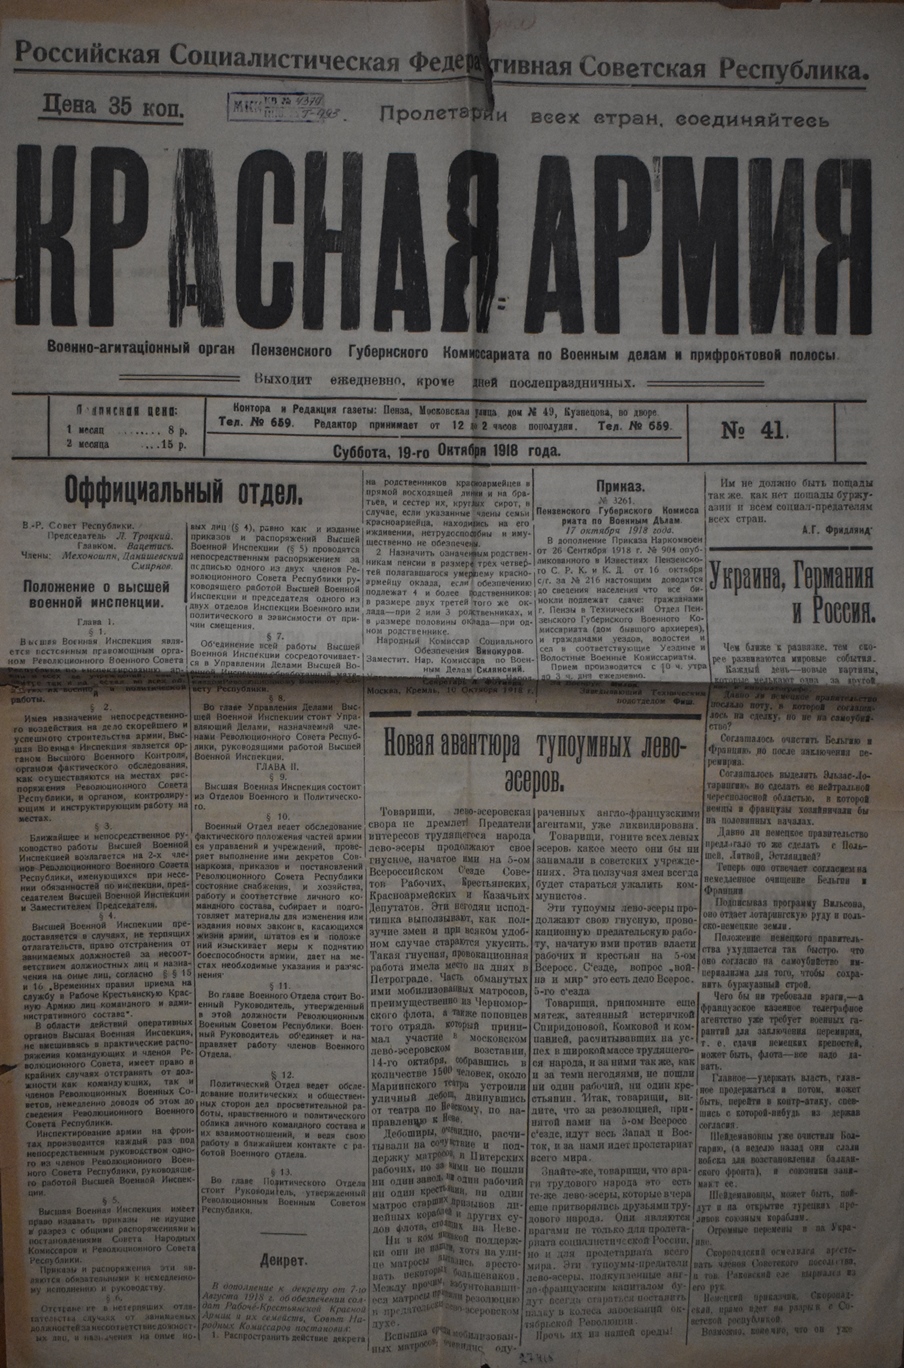 Газета "Красная Армия" № 41, від суботи 19 жовтня 1918 року